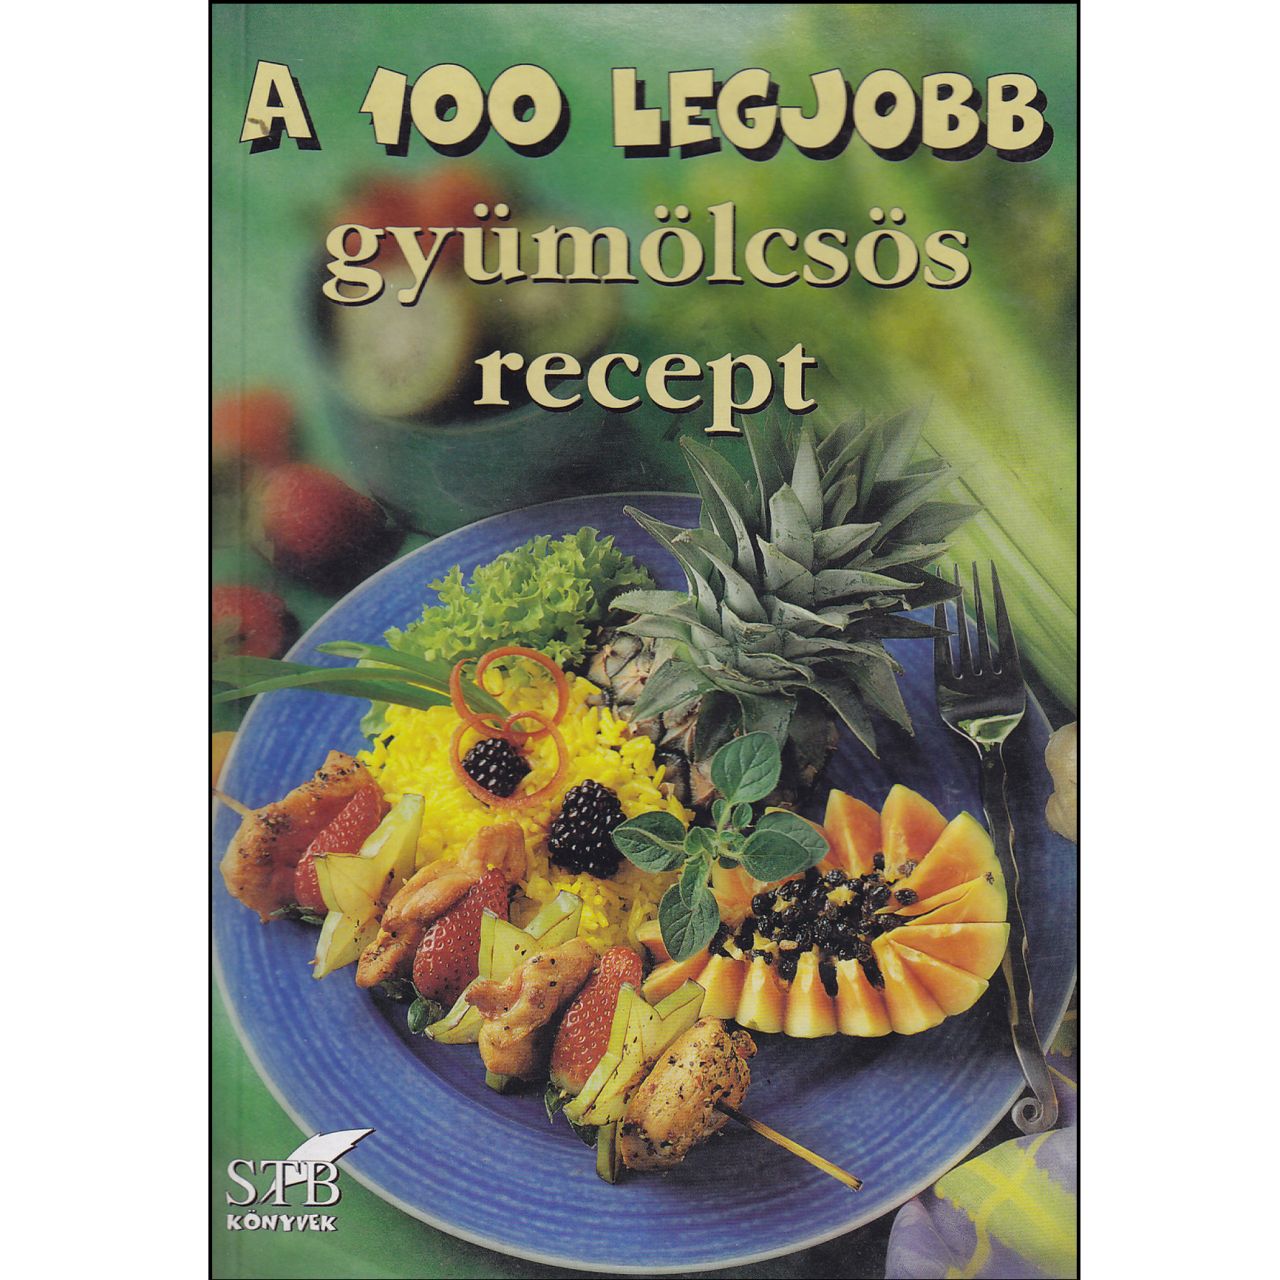 A 100 legjobb gyümölcsös recept (könyv)